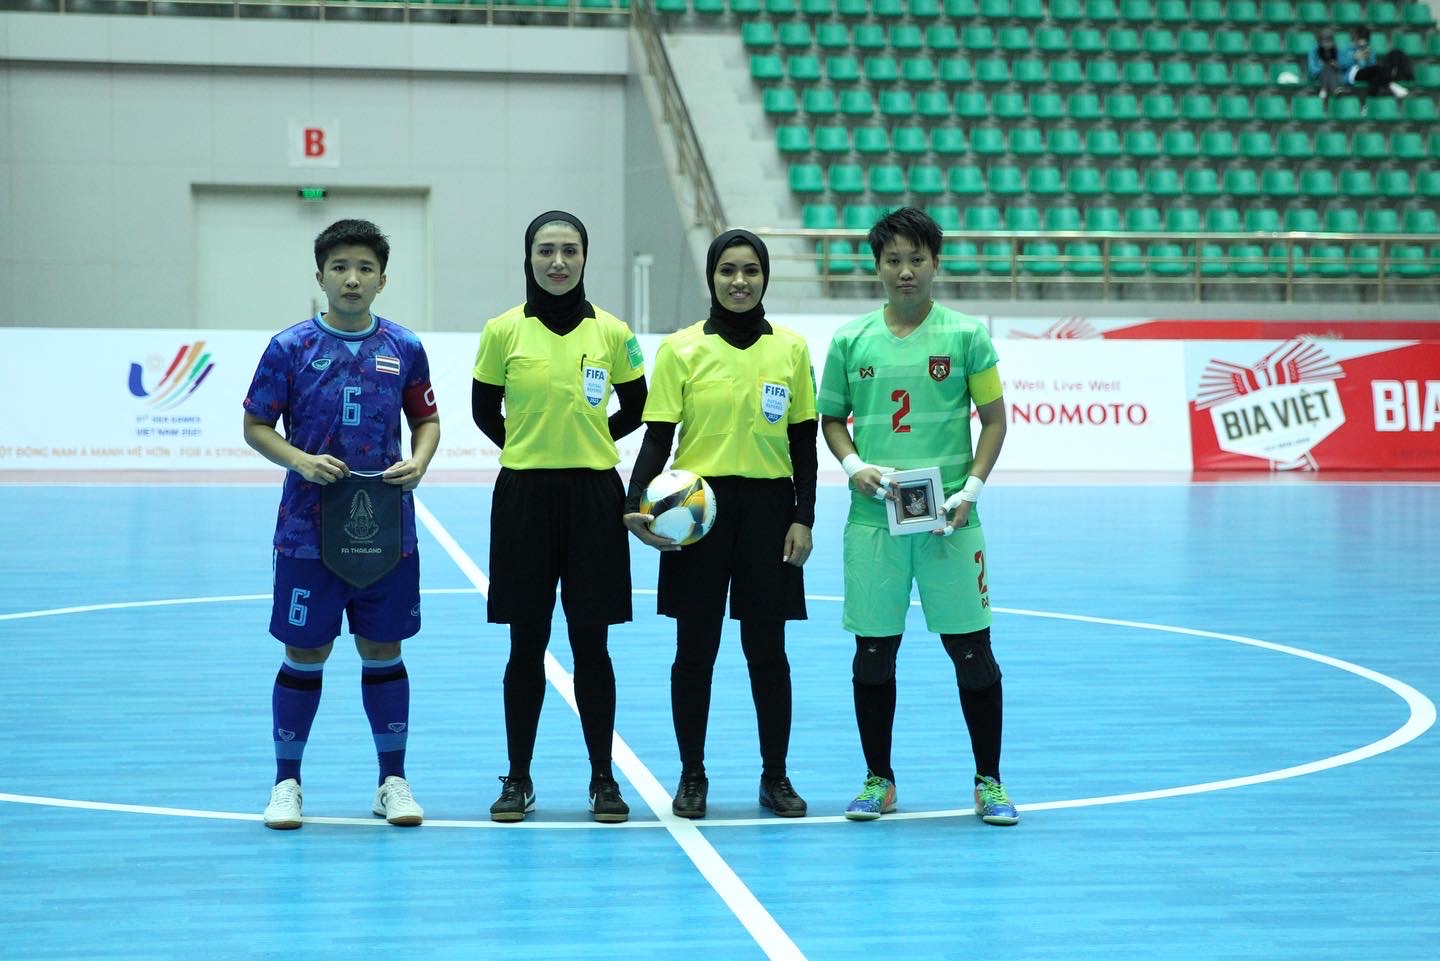 كرة القدم داخل الصالات: لسلطنة عمان حكمات في اللعبة ‎